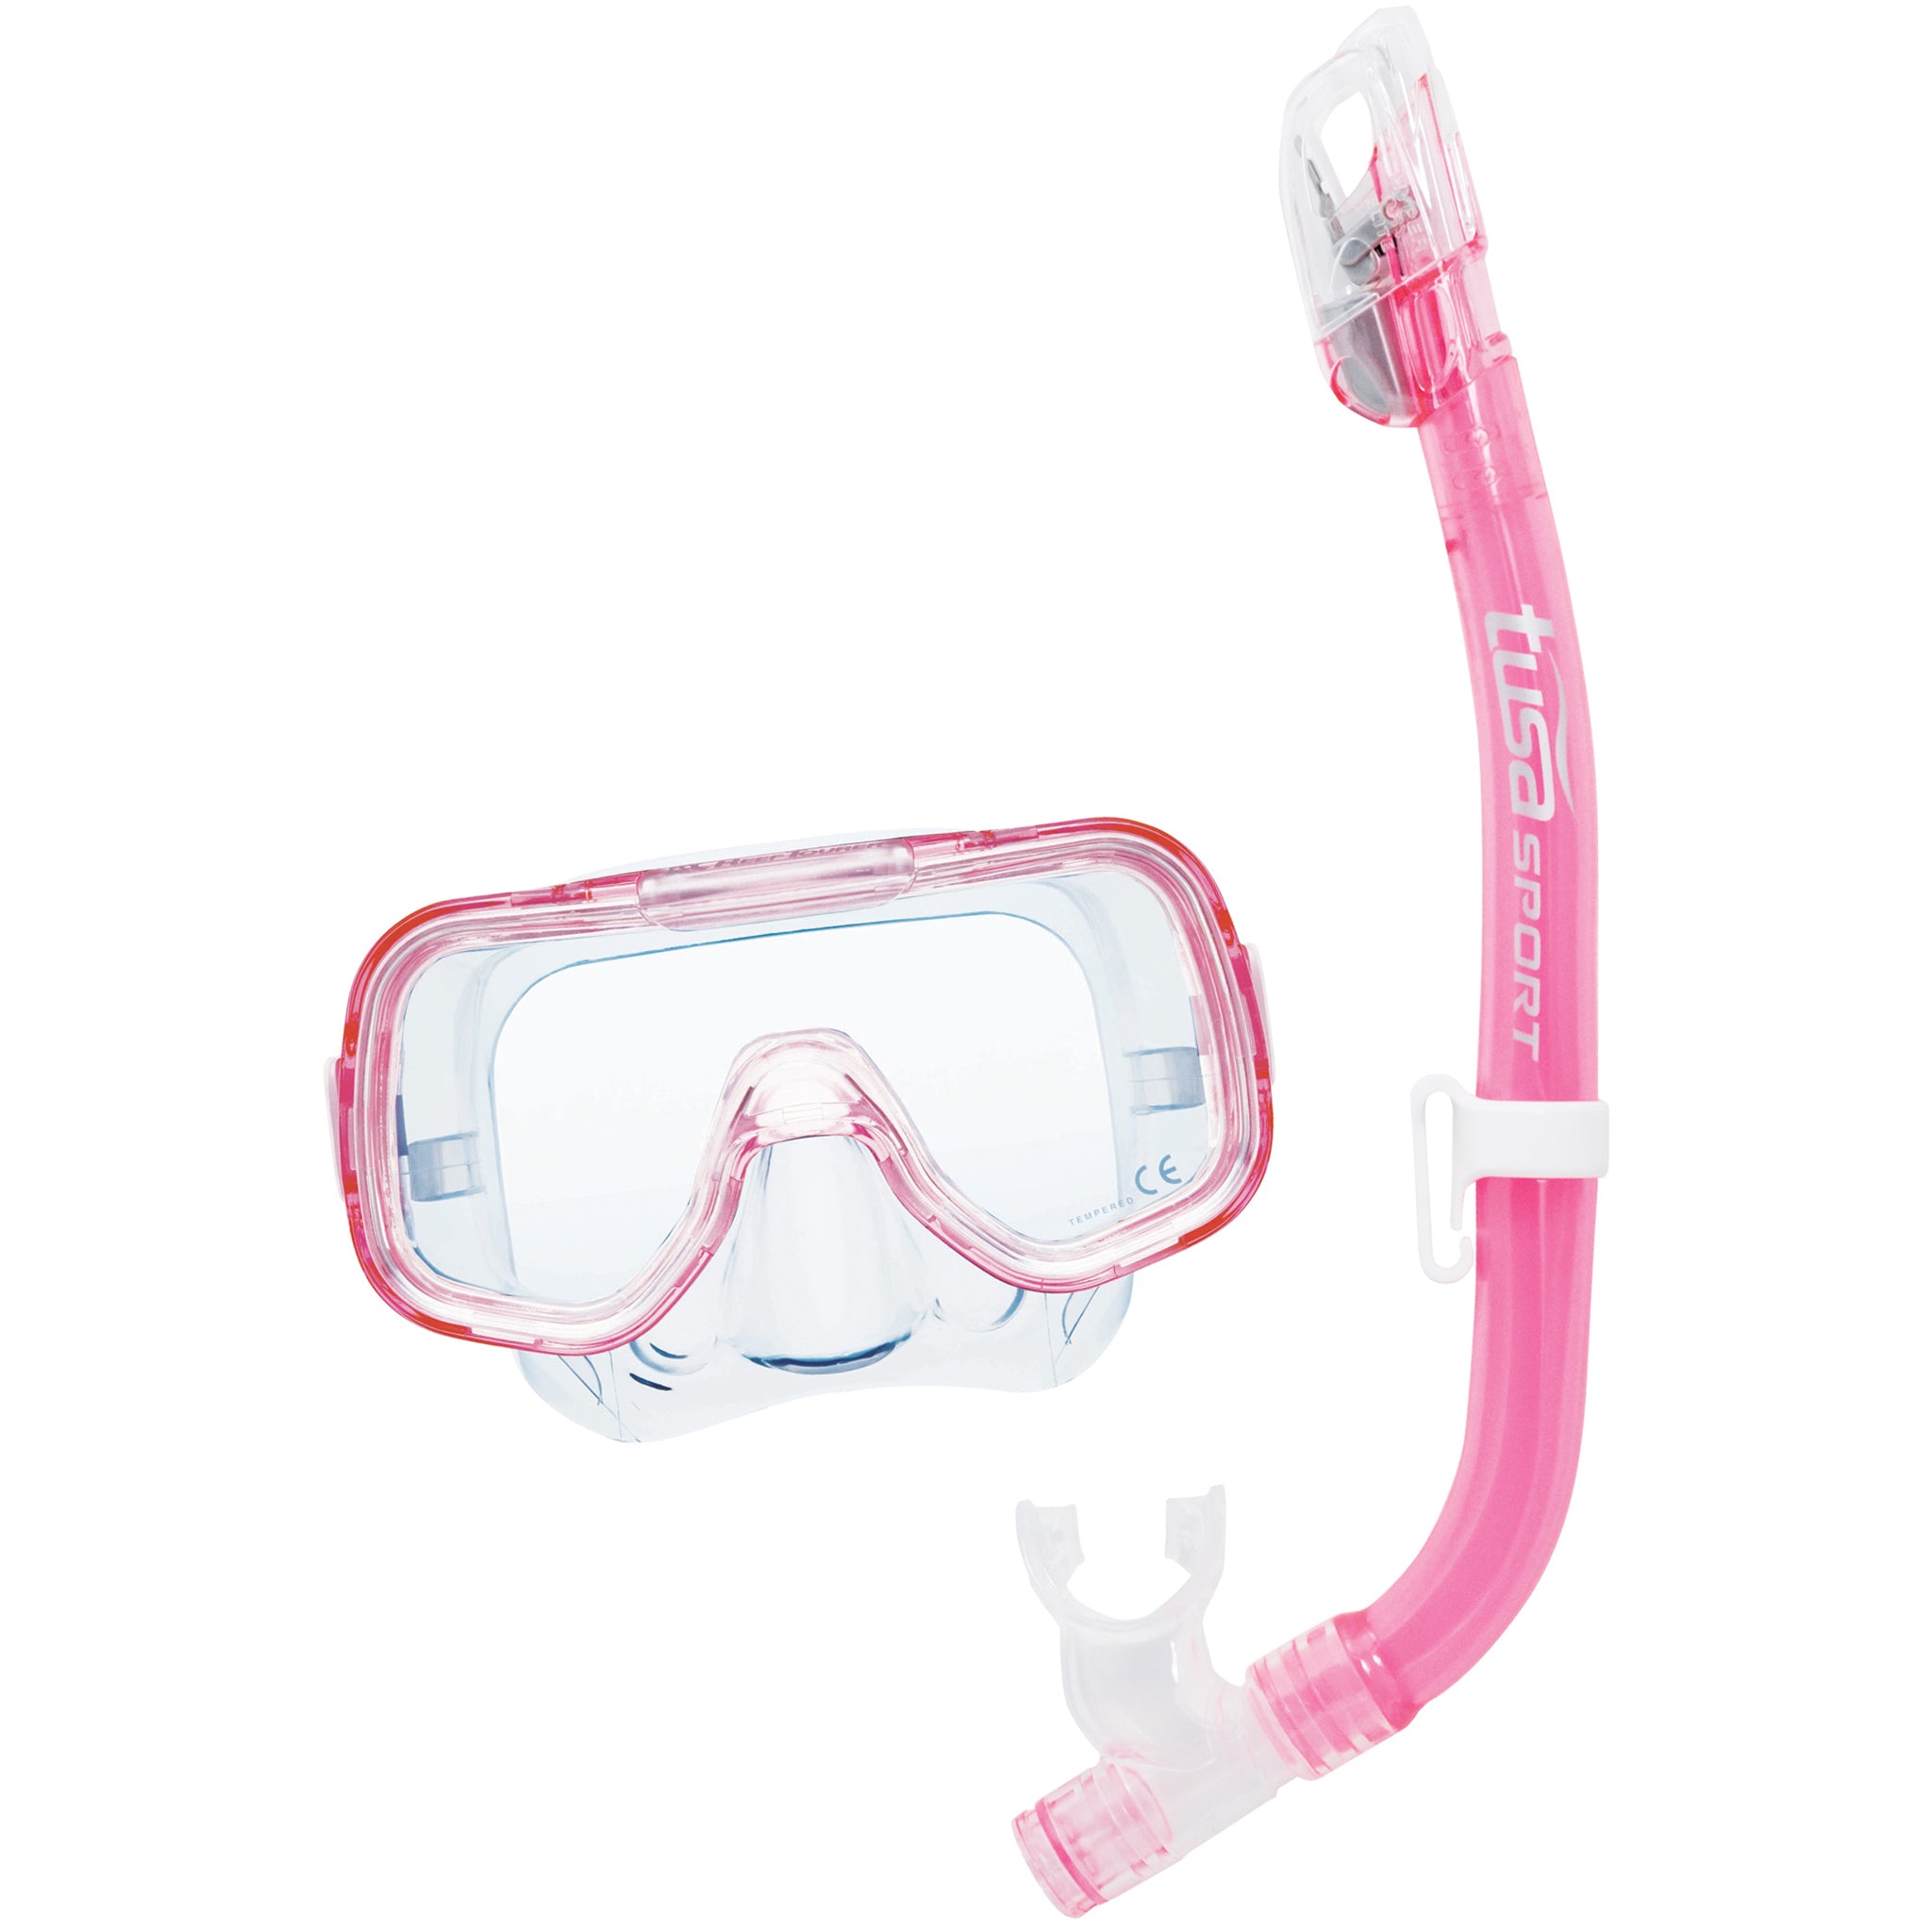 Tusa Mini-Kleio Mask & Dry Snorkel Set - Pink/Clear